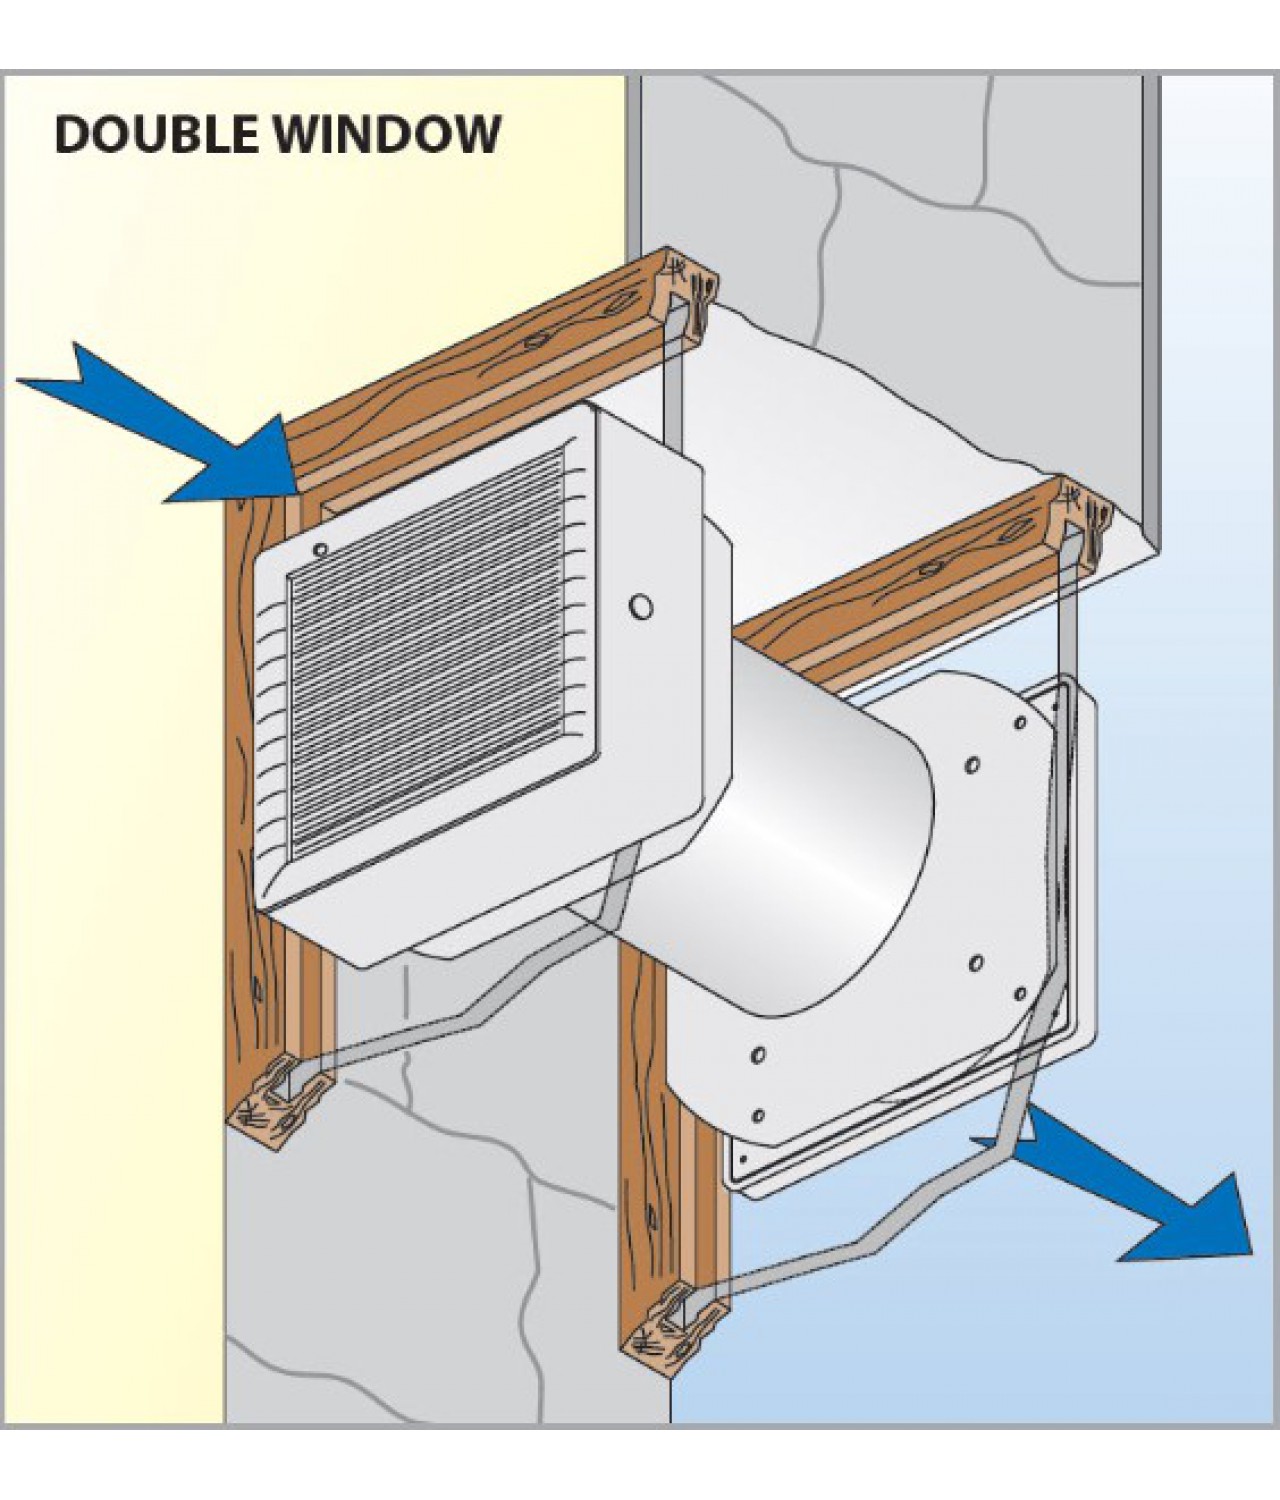 VITRO montavimo pavyzdys į dvigubą langą (papildomai reikia užsakyti SF rinkinį)